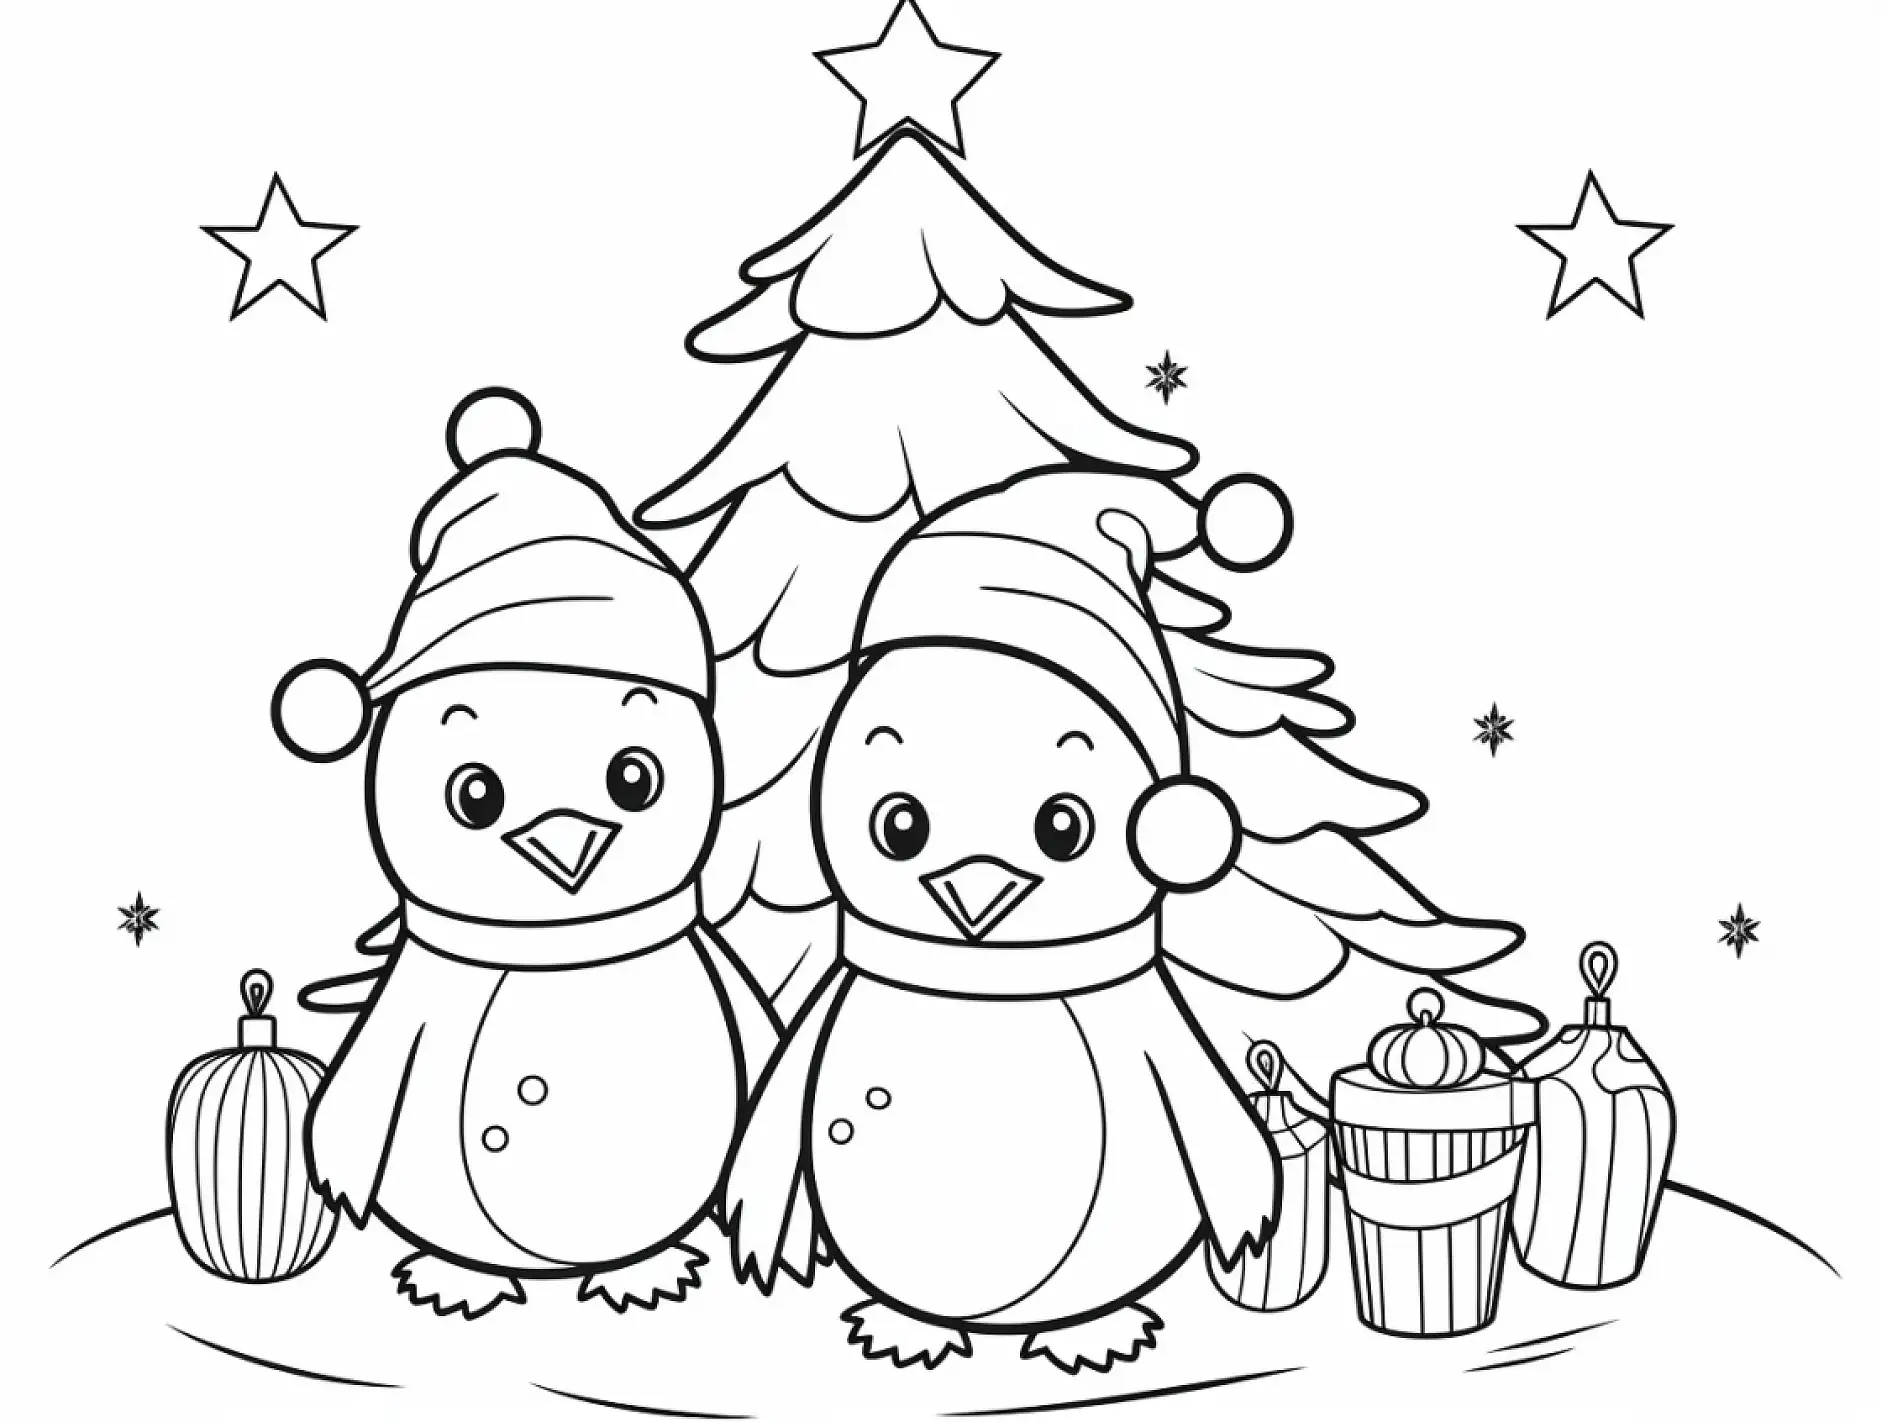 Ausmalbild Pinguine mit Weihnachtsbaum und Geschenken